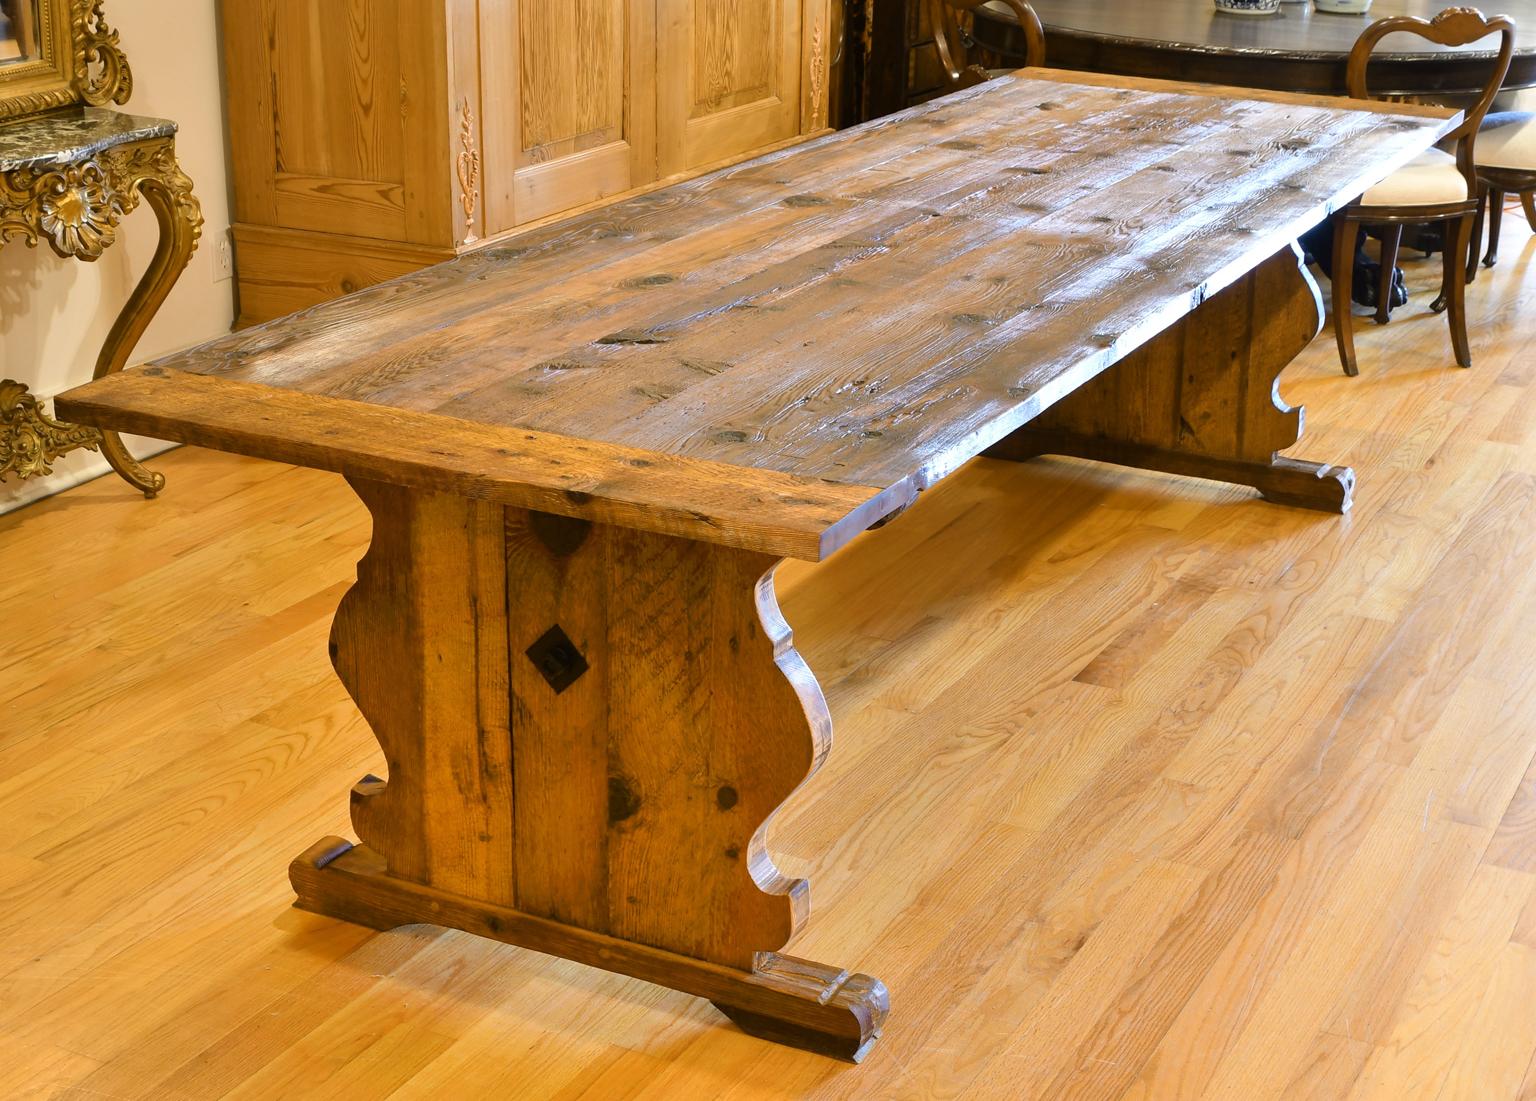 
Prête pour une livraison immédiate, cette table de ferme suédoise de 10 pieds à base de tréteaux a été inspirée d'une table gustavienne originale de notre inventaire datant du début des années 1800.
Le plateau en bois est fabriqué à partir de